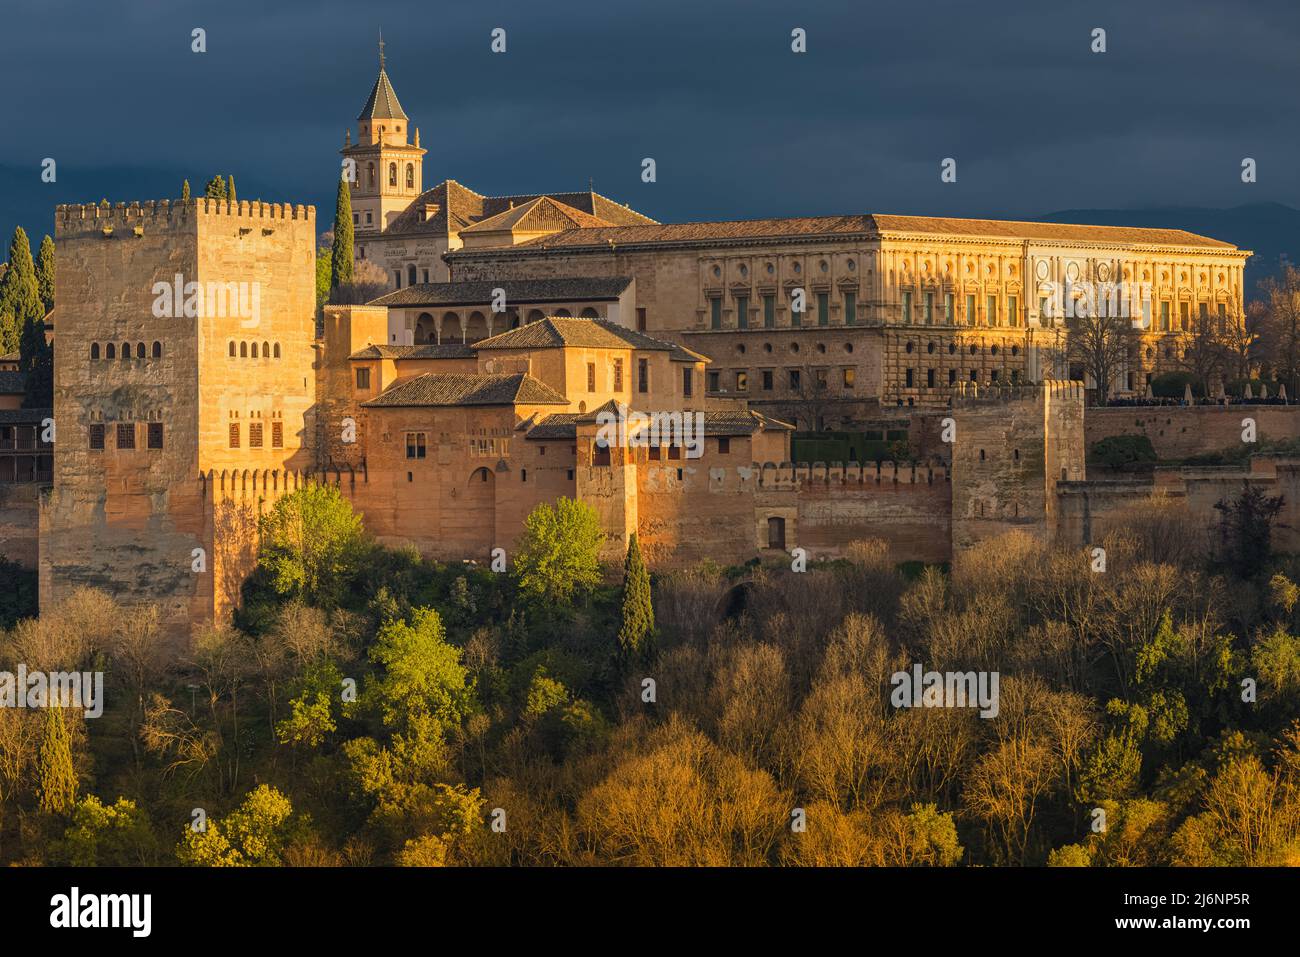 Die Alhambra ist ein Palast- und Festungskomplex in Granada, Andalusien, Spanien. Es ist eines der berühmtesten Denkmäler der islamischen Architektur und Stockfoto